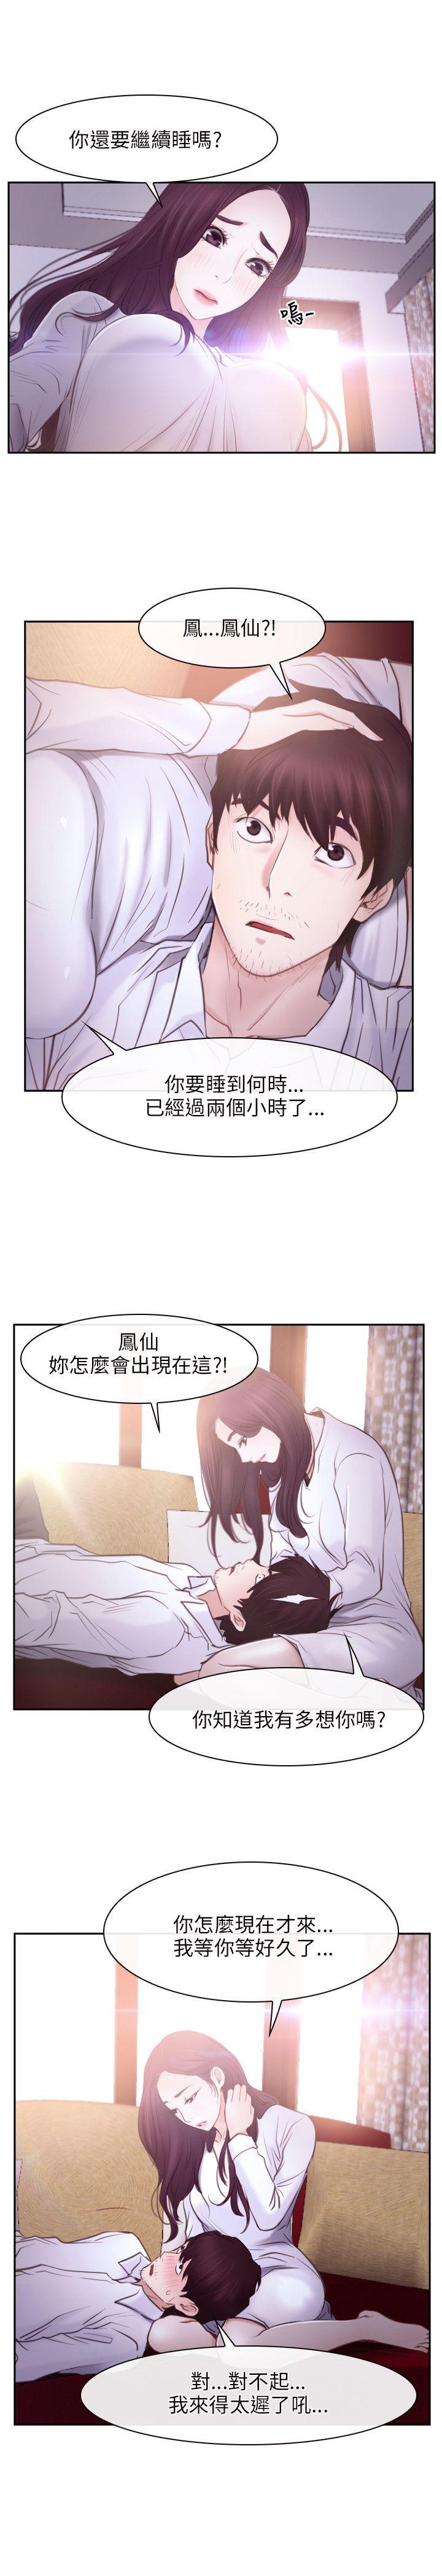 韩国污漫画 初戀物語 第24话 7